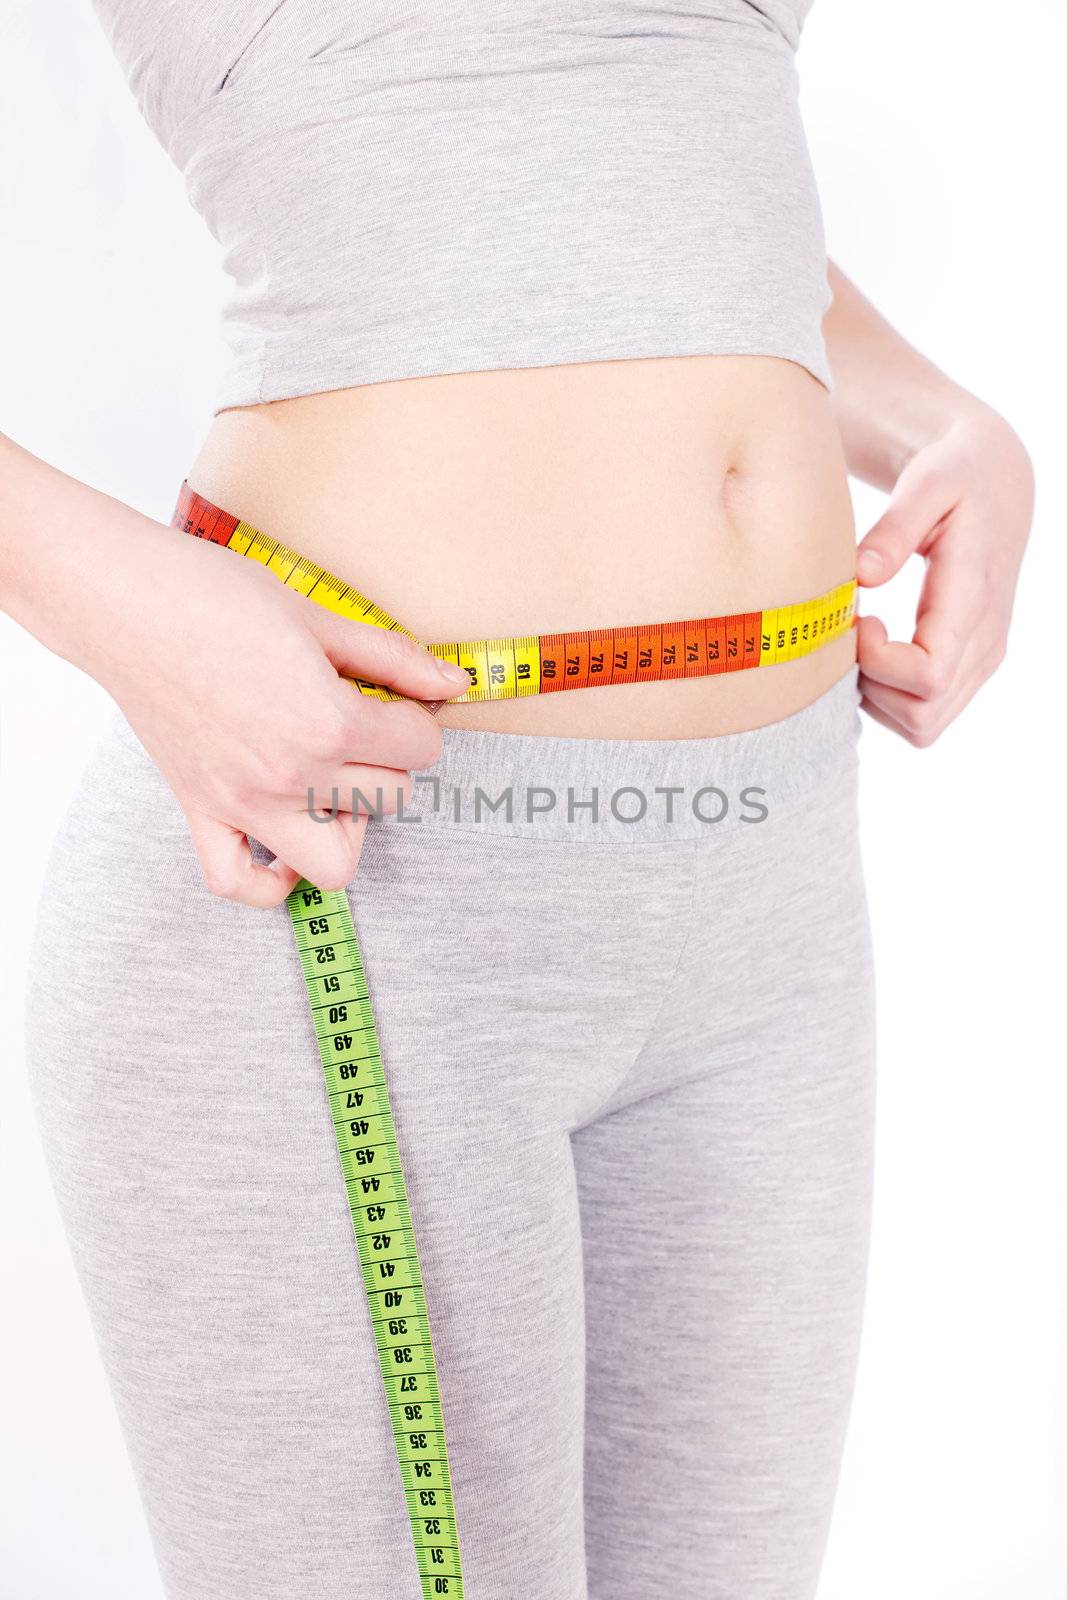 Measure tape around slim woman's waist